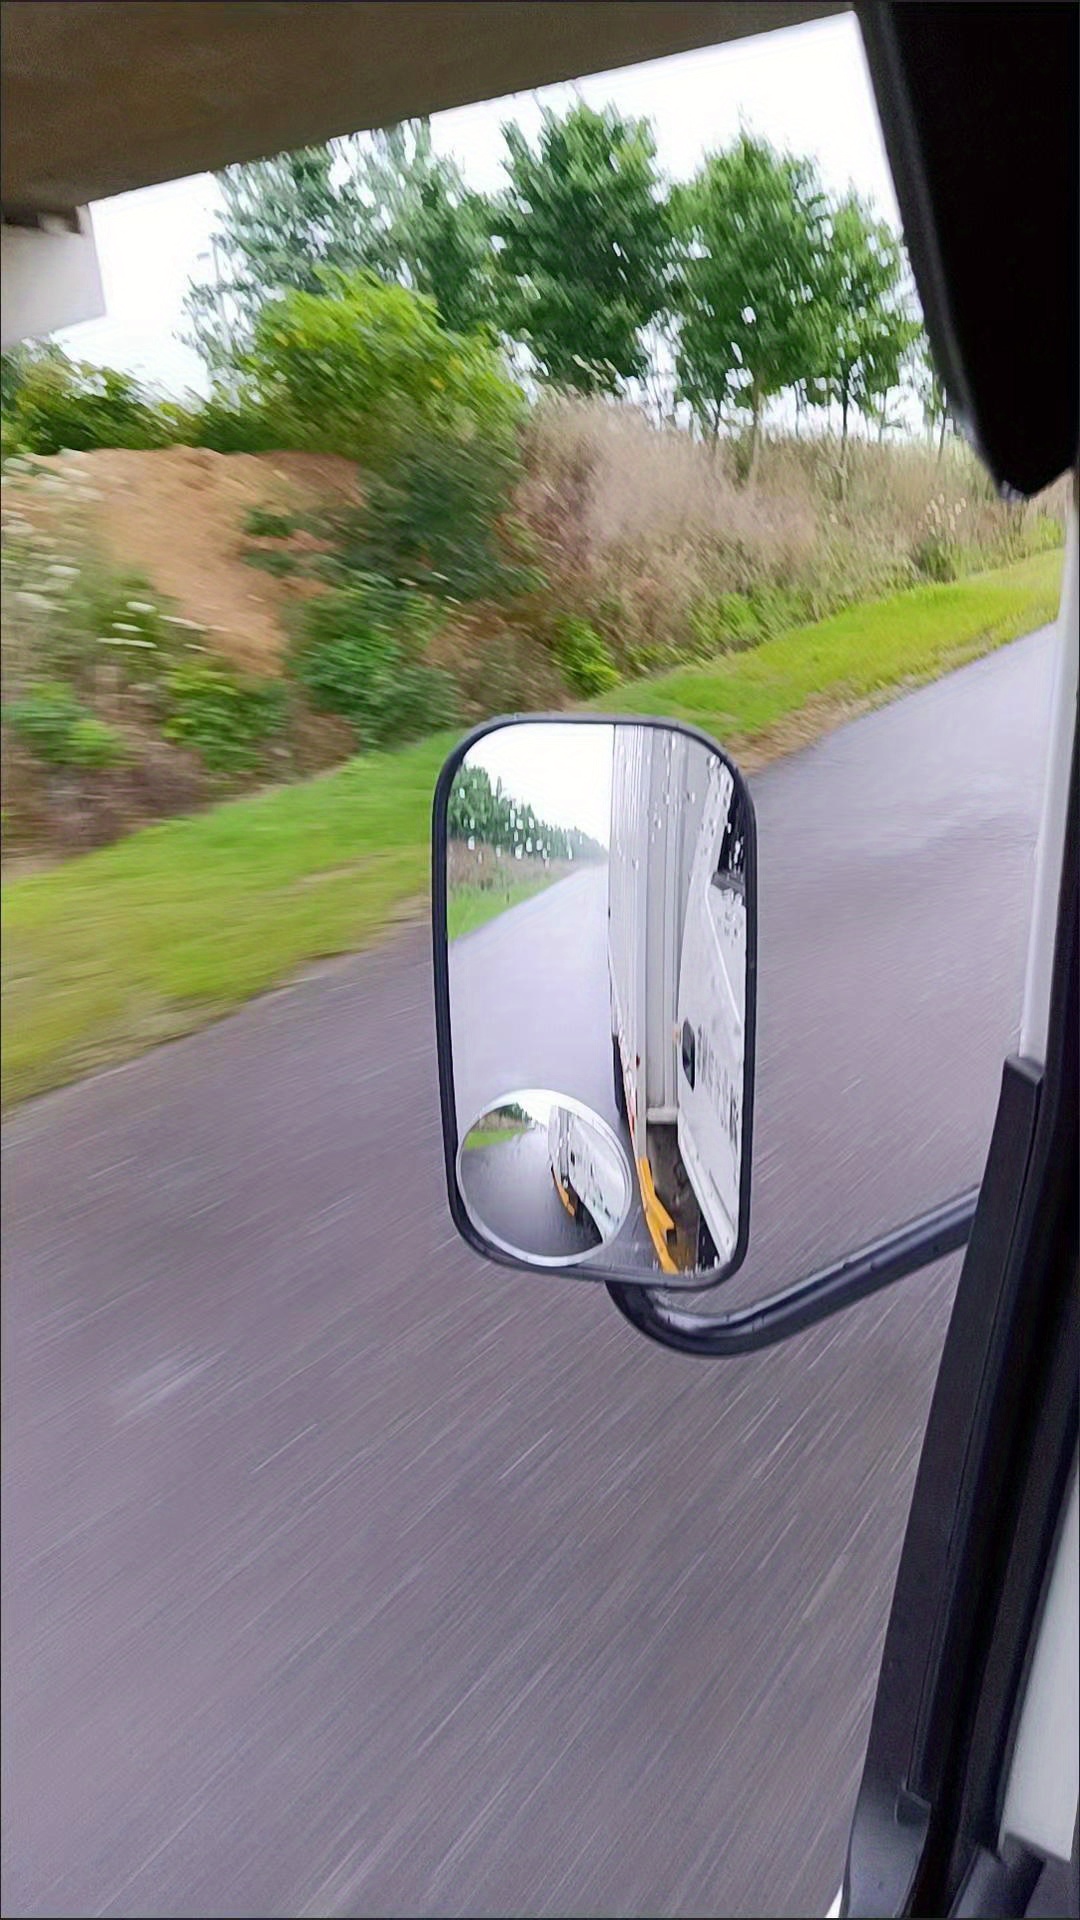 Blind Spot Spiegel, Weitwinkel-Rückspiegel 360-Grad-Rotation Universal Auto  Hilfsspiegel Front-/Heckräder Beobachtung Für Auto LKW SUV - Temu Germany